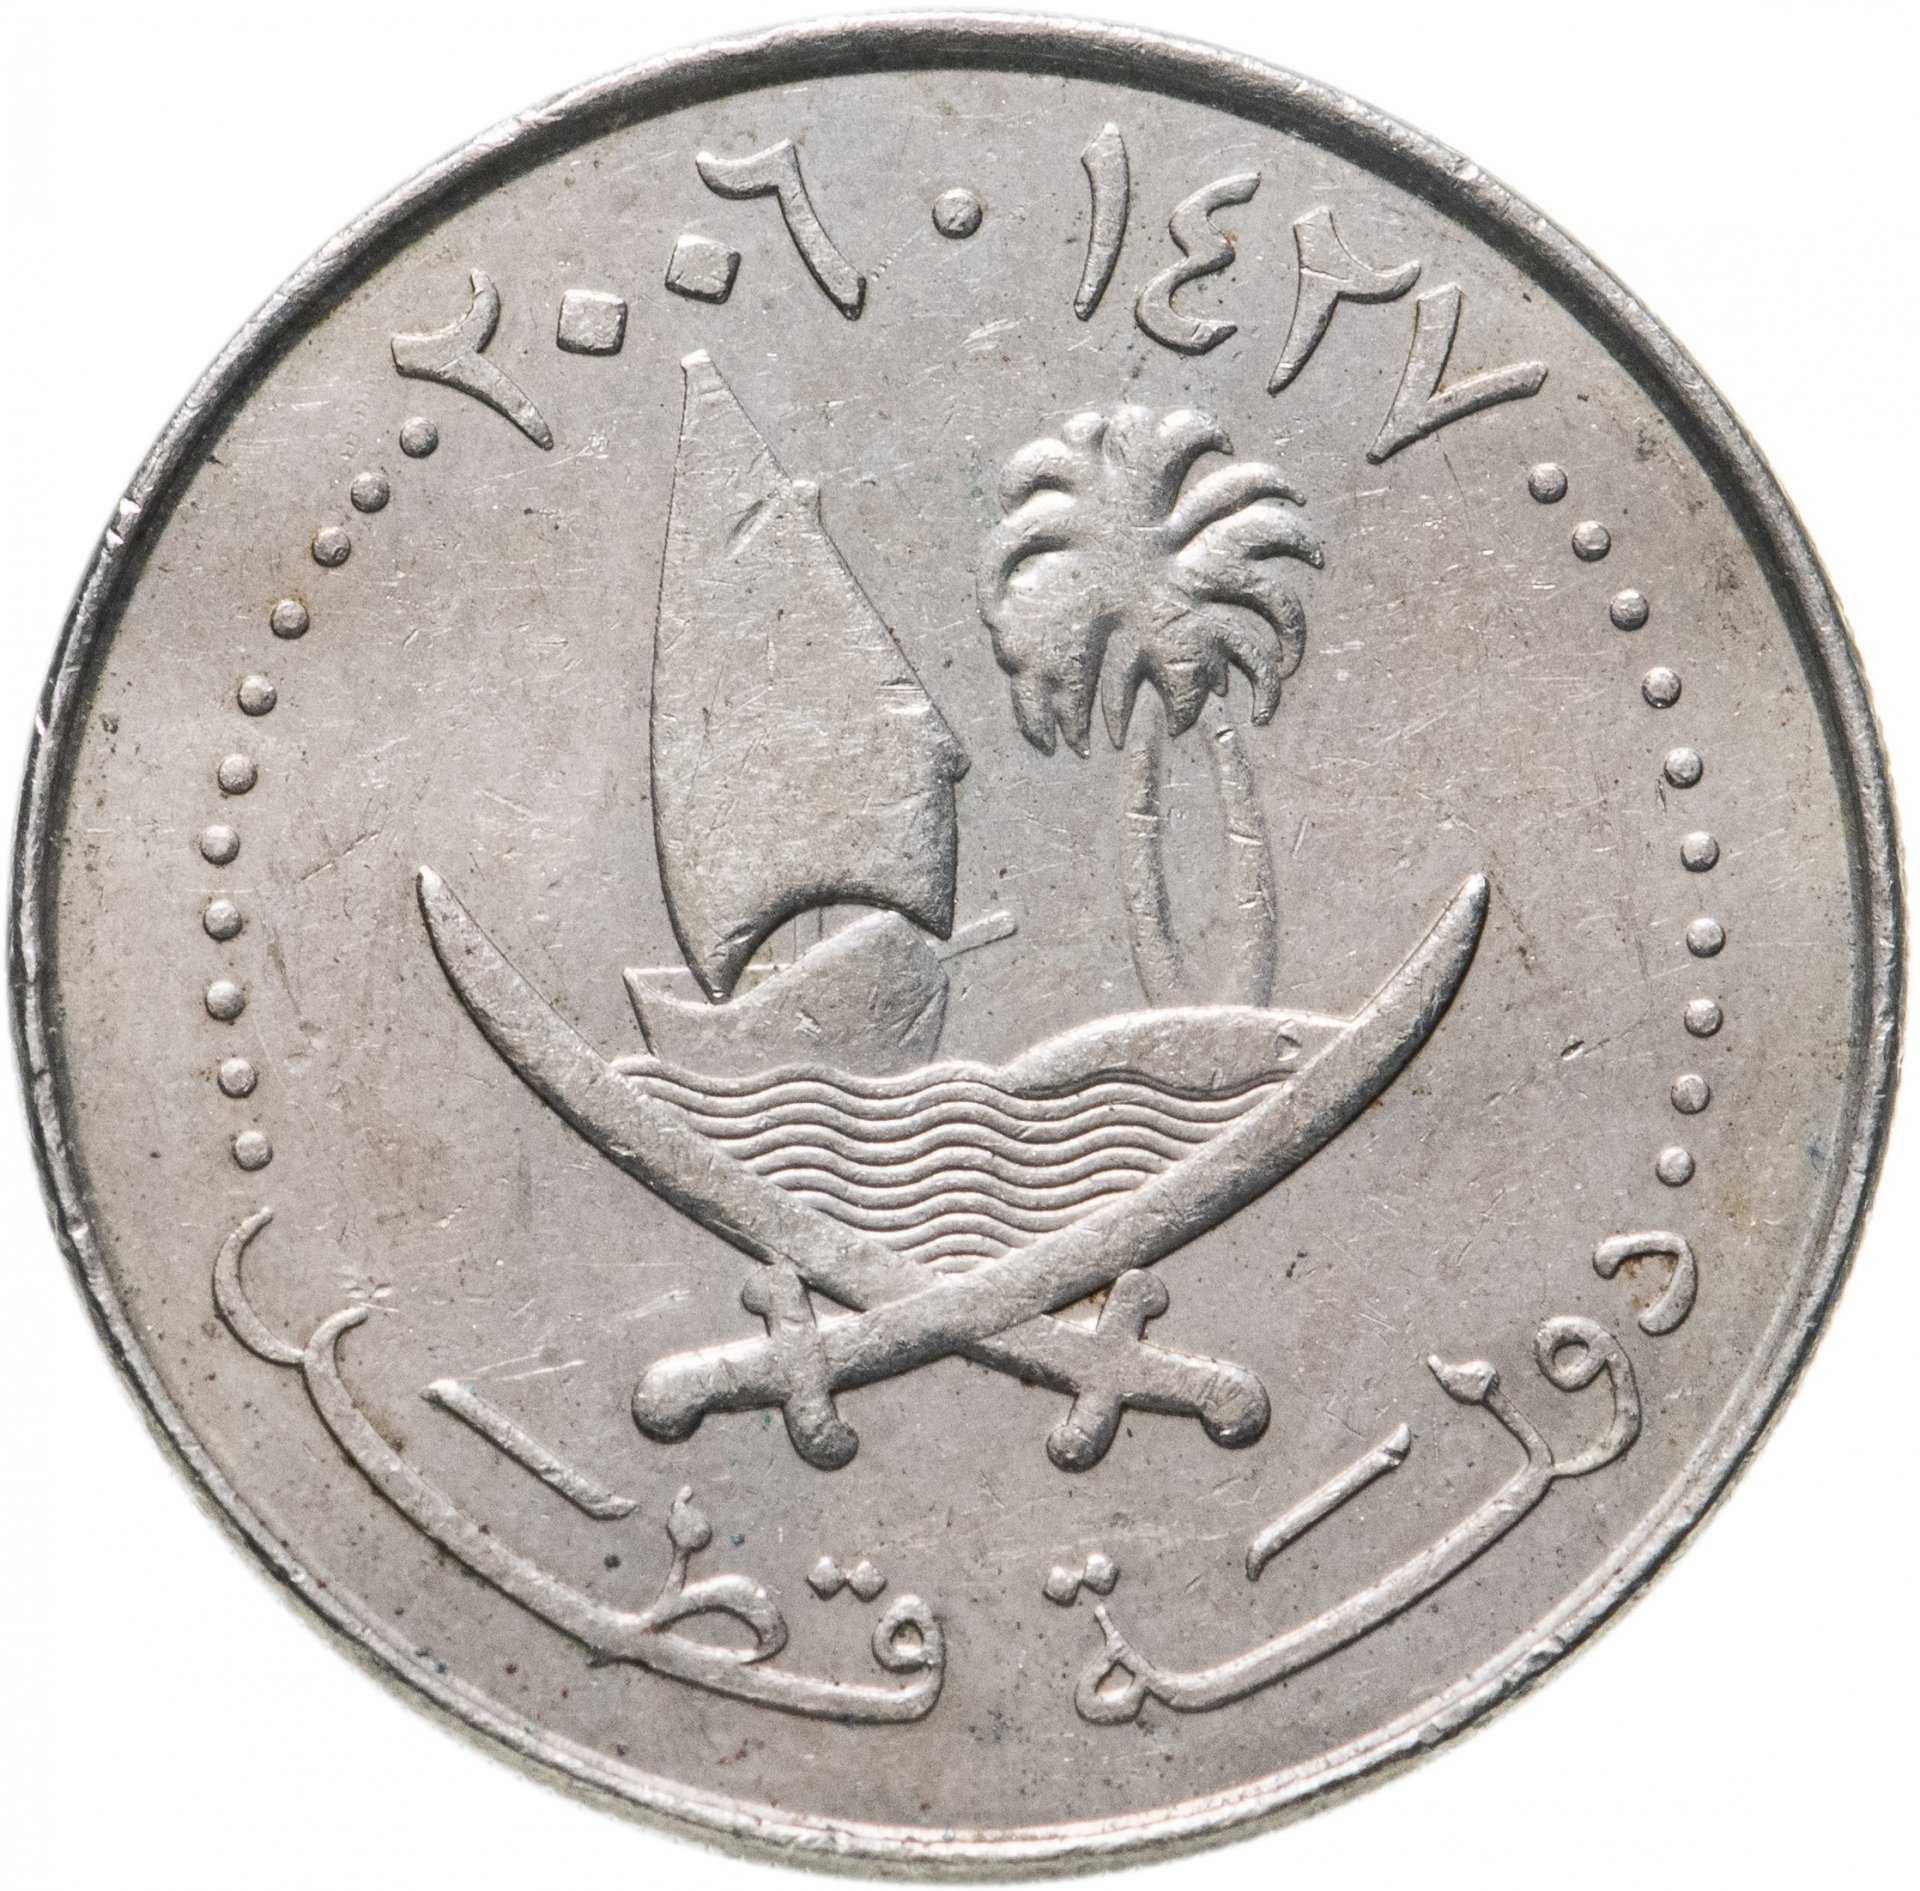 9000 дирхам. Монеты Катара. Монета Катар 2 дирхама. Дирхамы монеты. Дирхам символ.